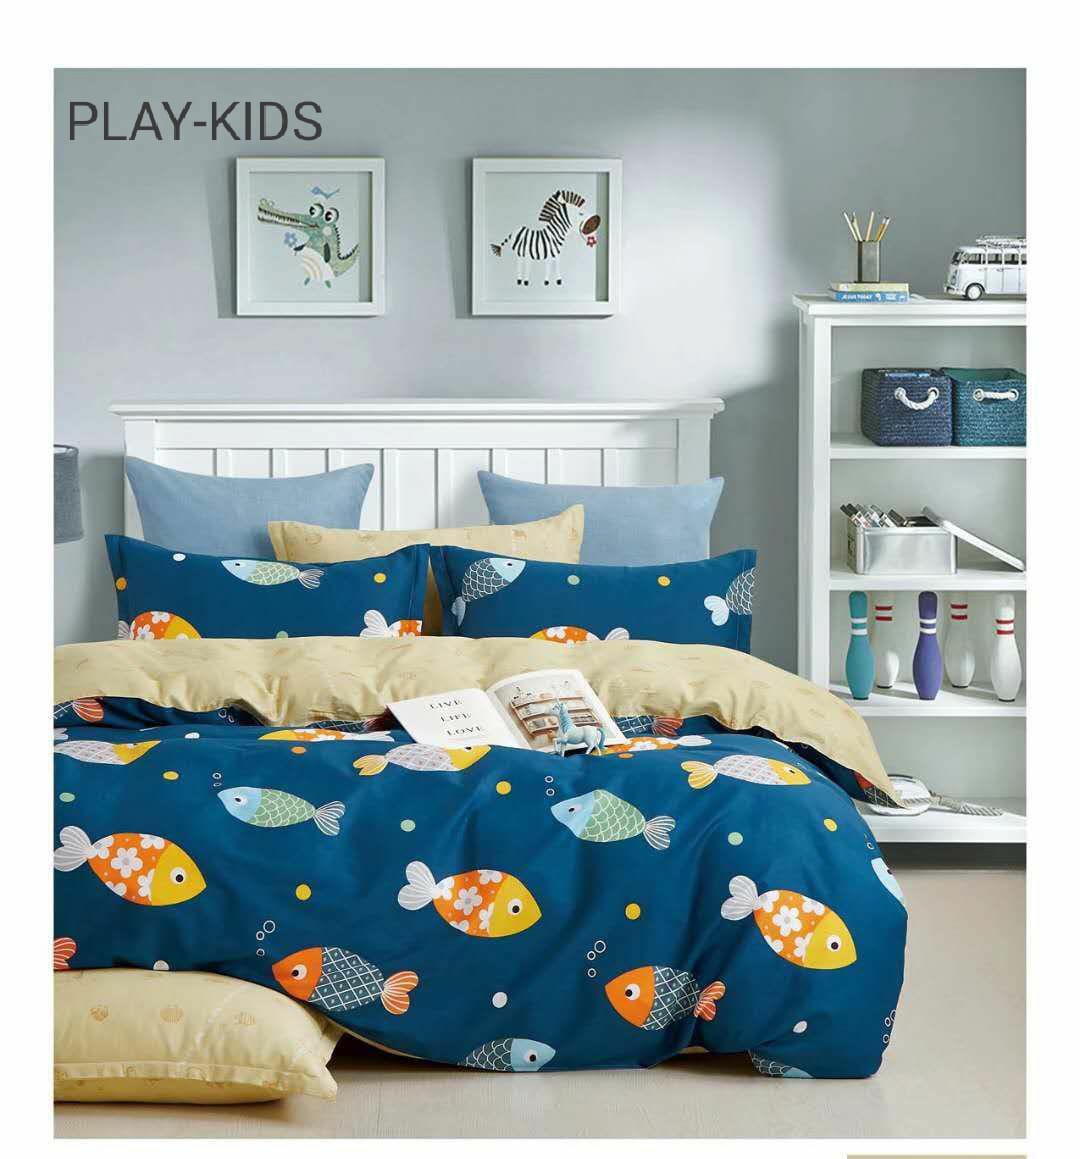 Kids 100% Cotton 350 TC Super King Size Double Bedsheet - 100" X 108" with 2 Pillow Covers - 3 Pcs Set